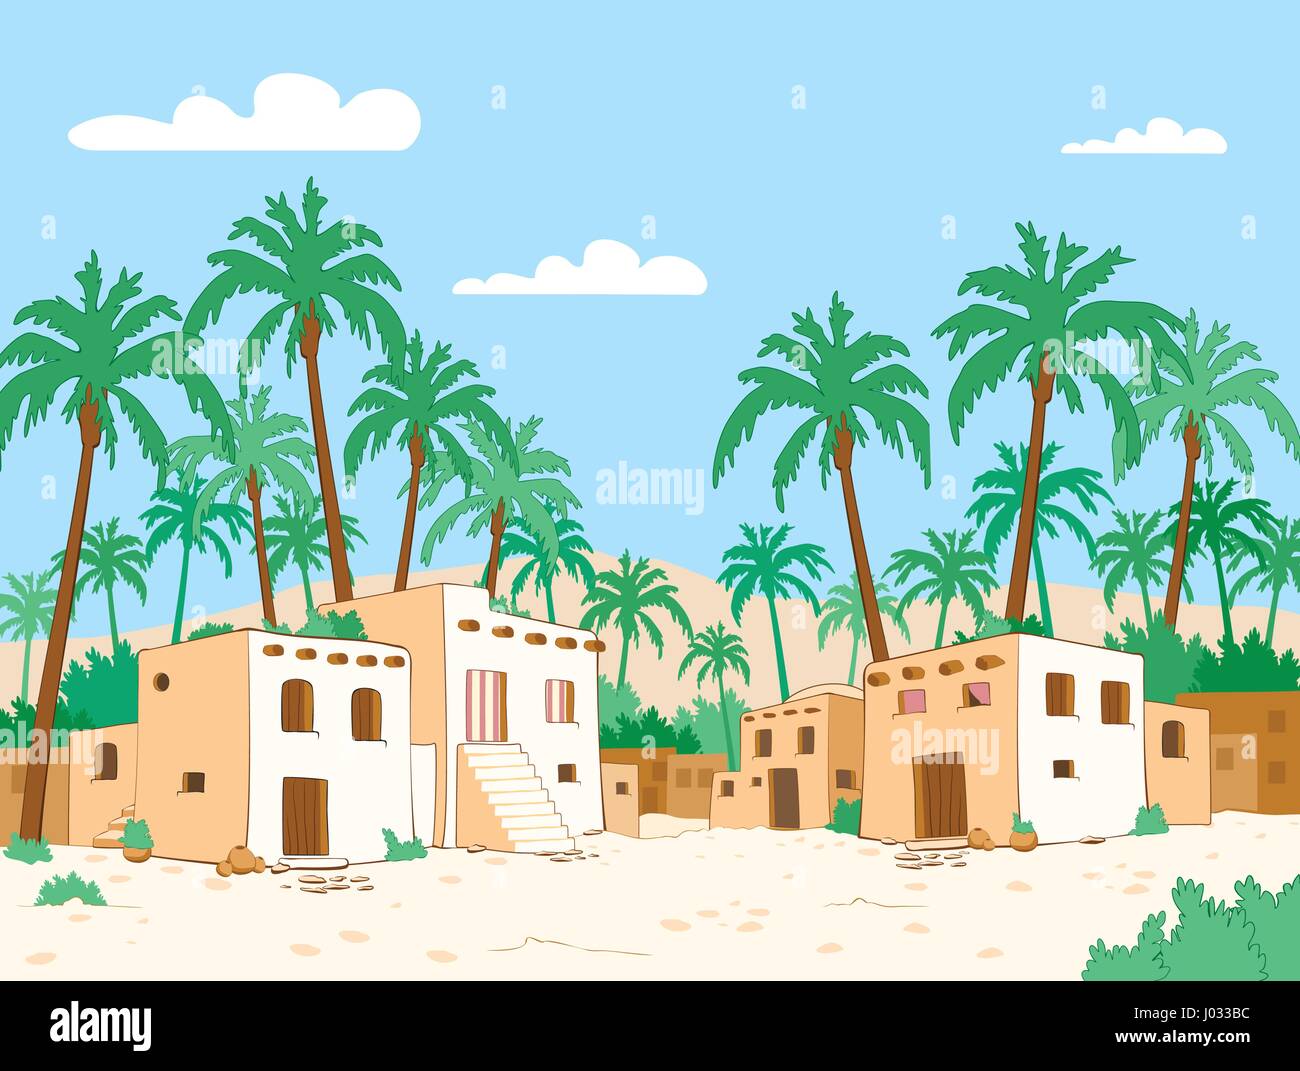 Dorf mit Palme in Oase der Wüste. Vektor-illustration Stock Vektor